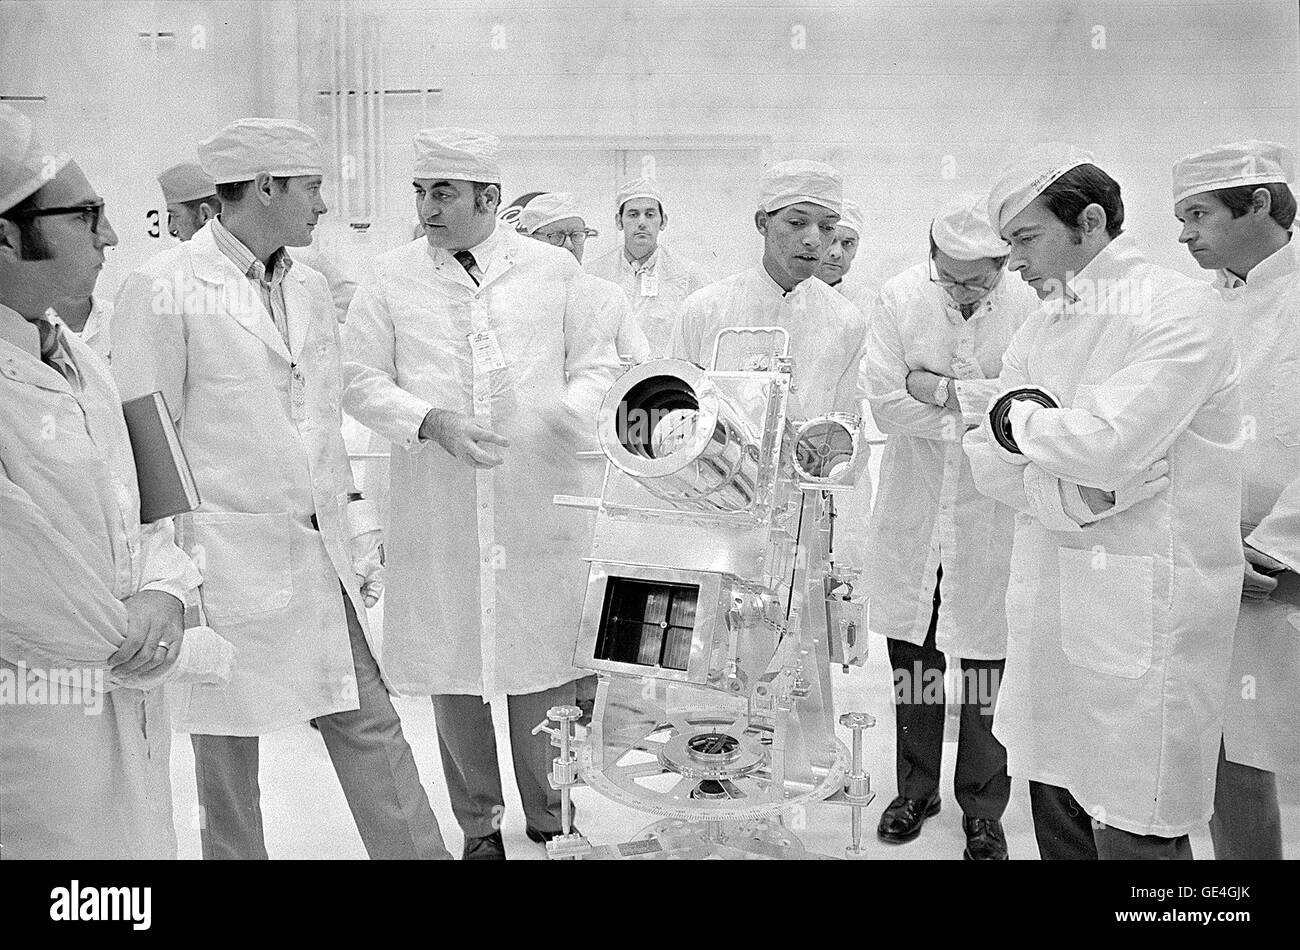 George Carruthers, Centre, principal chercheur de la surface lunaire Caméra Ultraviolet, parle de l'instrument à l'aide d'Apollo 16, John Young, commandant de la droite. Carruthers est employé par le Naval Research Lab à Washington, D.C., du pilote du module lunaire gauche sont Charles Duc et Rocco Petrone, directeur du programme Apollo. Cette photo a été prise au cours d'une surface lunaire Apollo dans l'examen des expériences du Manned Spacecraft Operations Building au Centre spatial Kennedy. Image #  : 71P-0544 Date : 12 Novembre, 1971 Banque D'Images